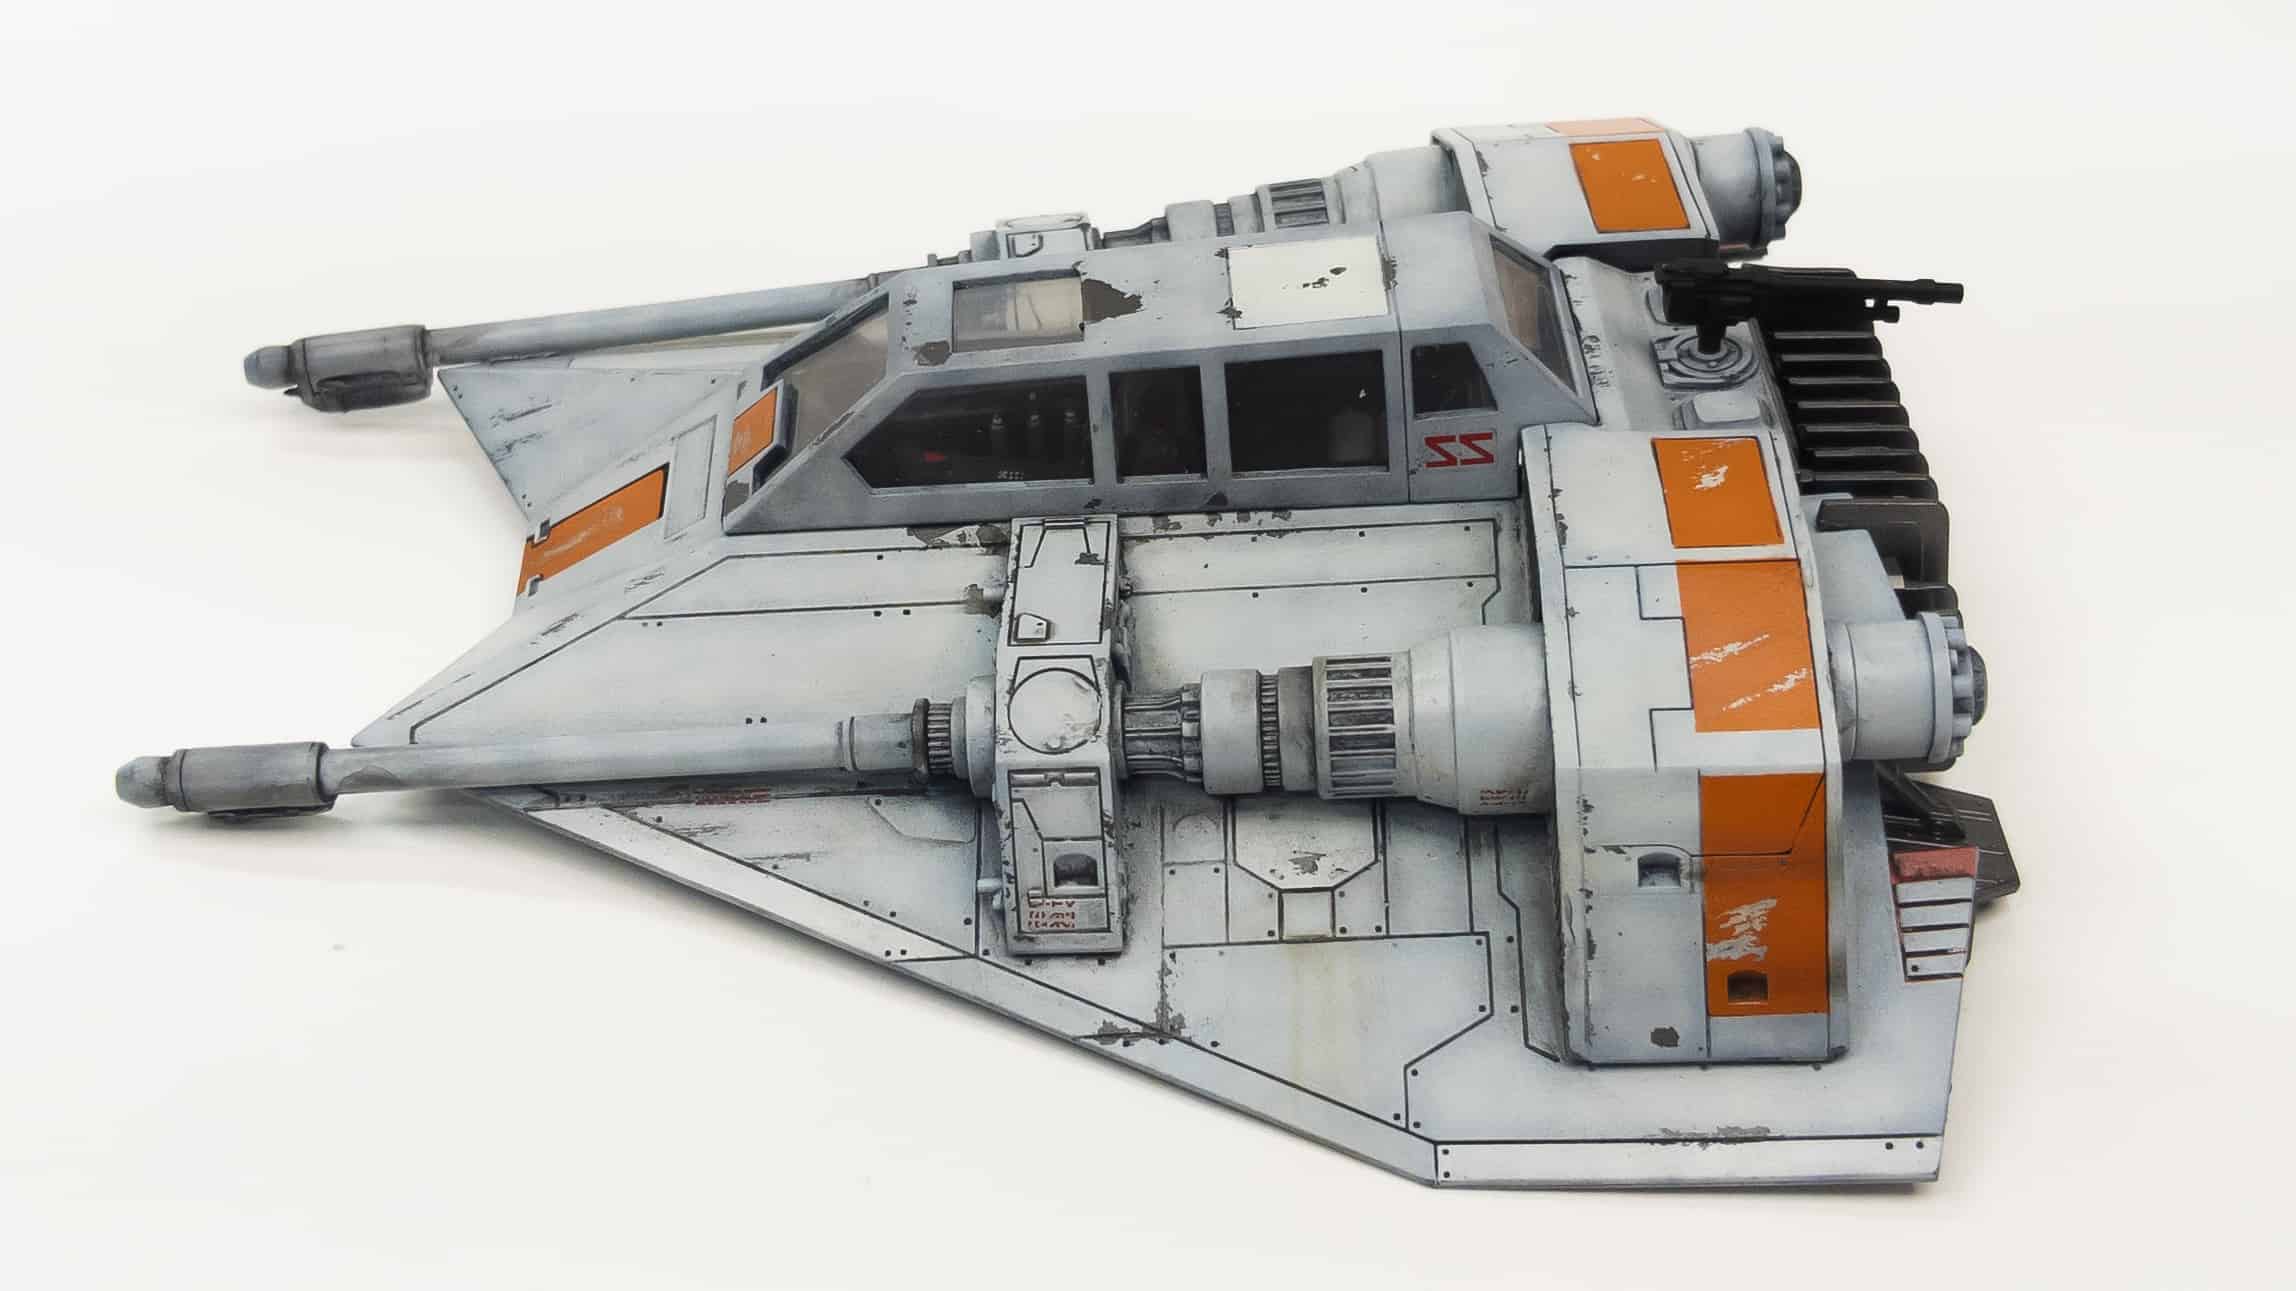 Star Wars Snowspeeder Bandai Plastic Kit 1:72 Model REVELL 